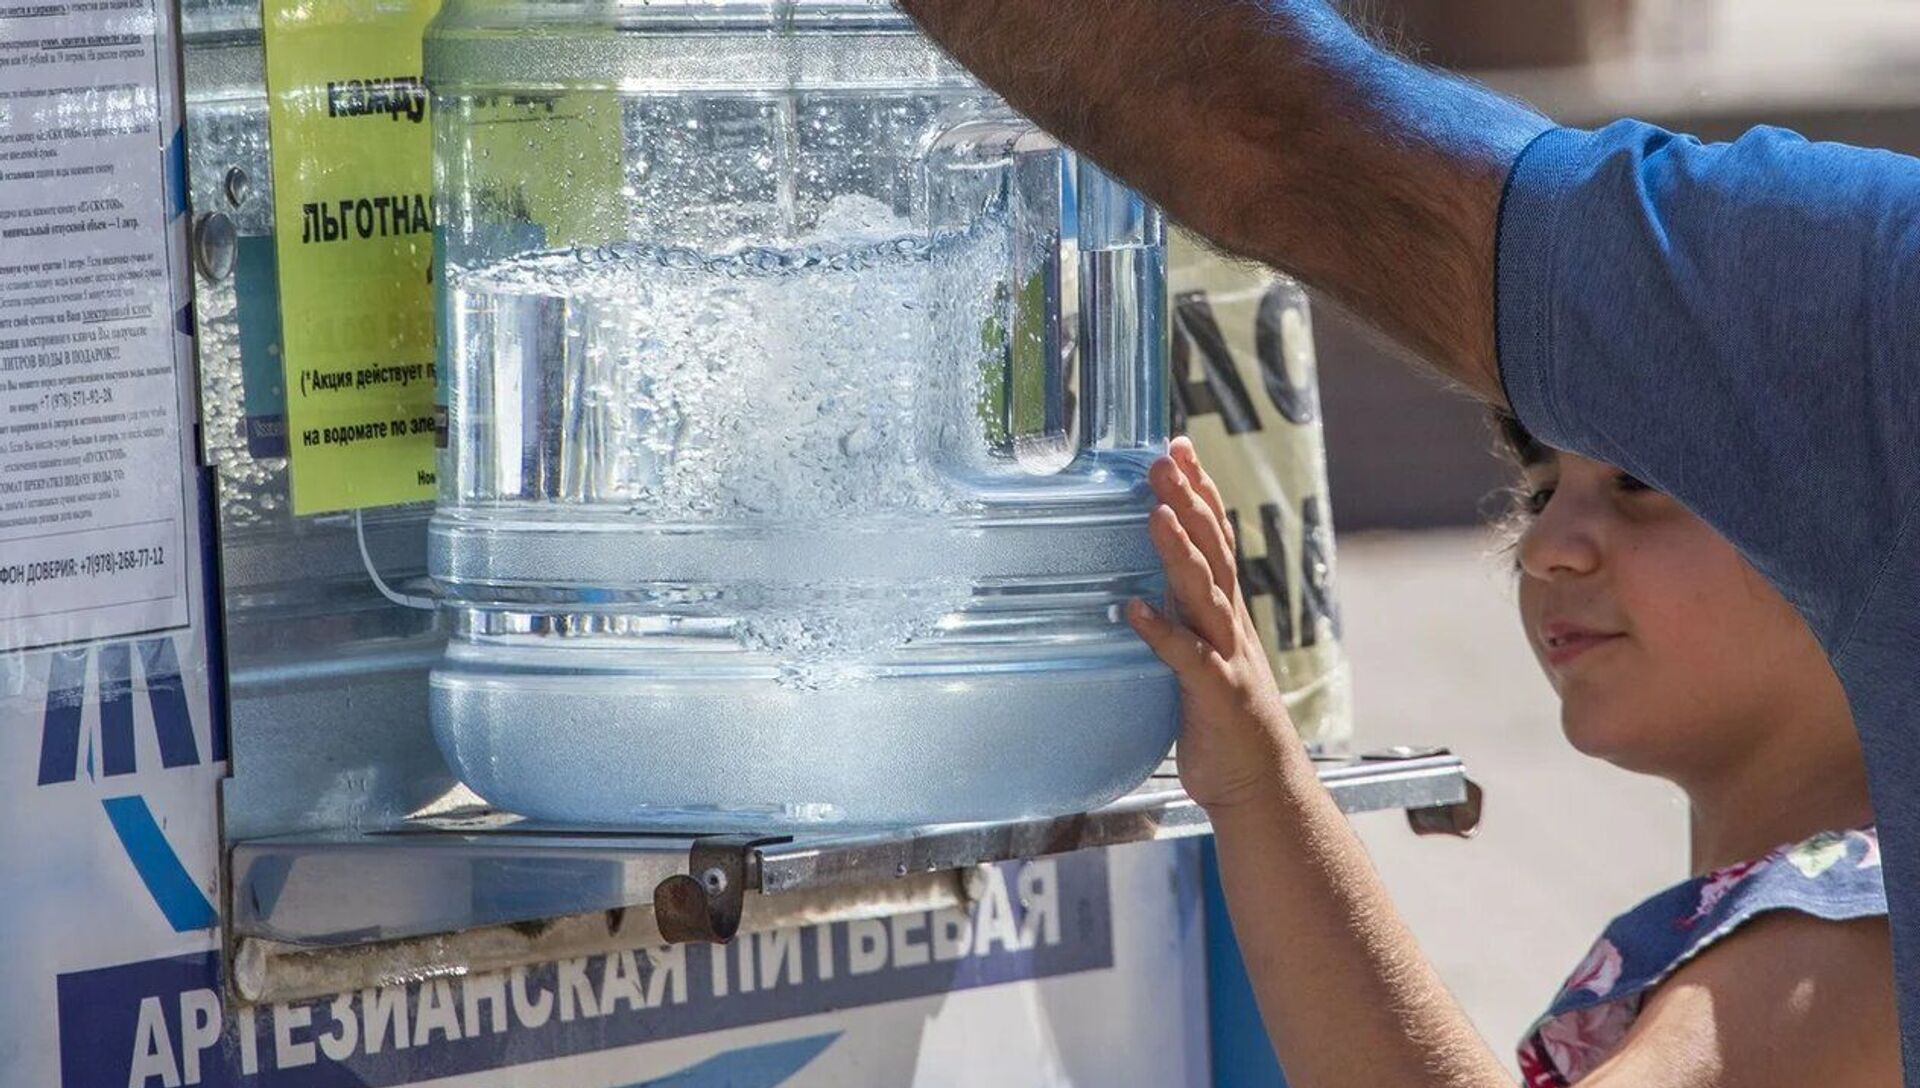 Покупка питьевой воды - РИА Новости, 1920, 30.08.2020